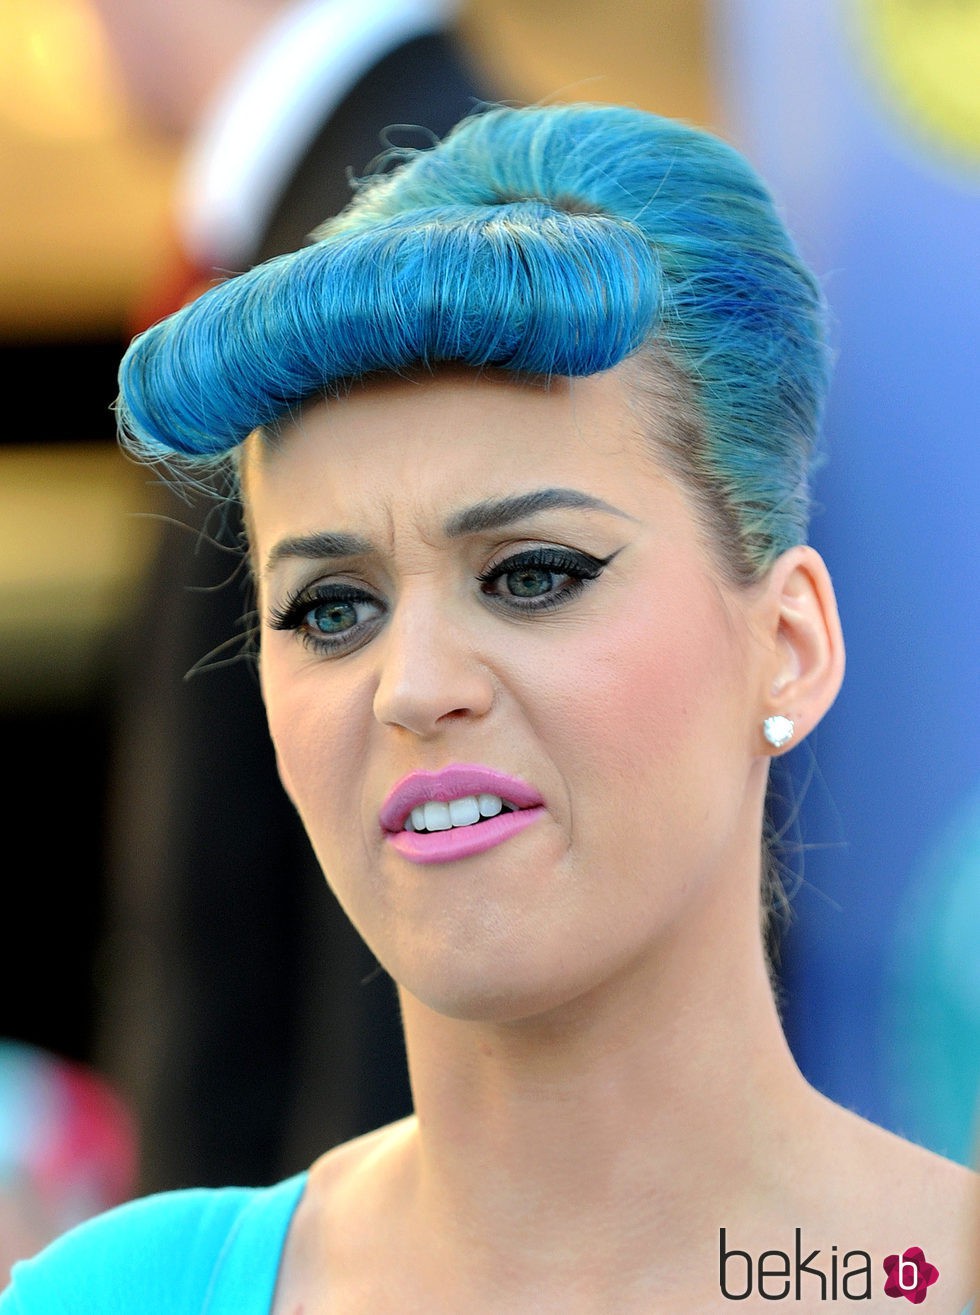 Katy Perry de cabello azul y peinados de los 50's